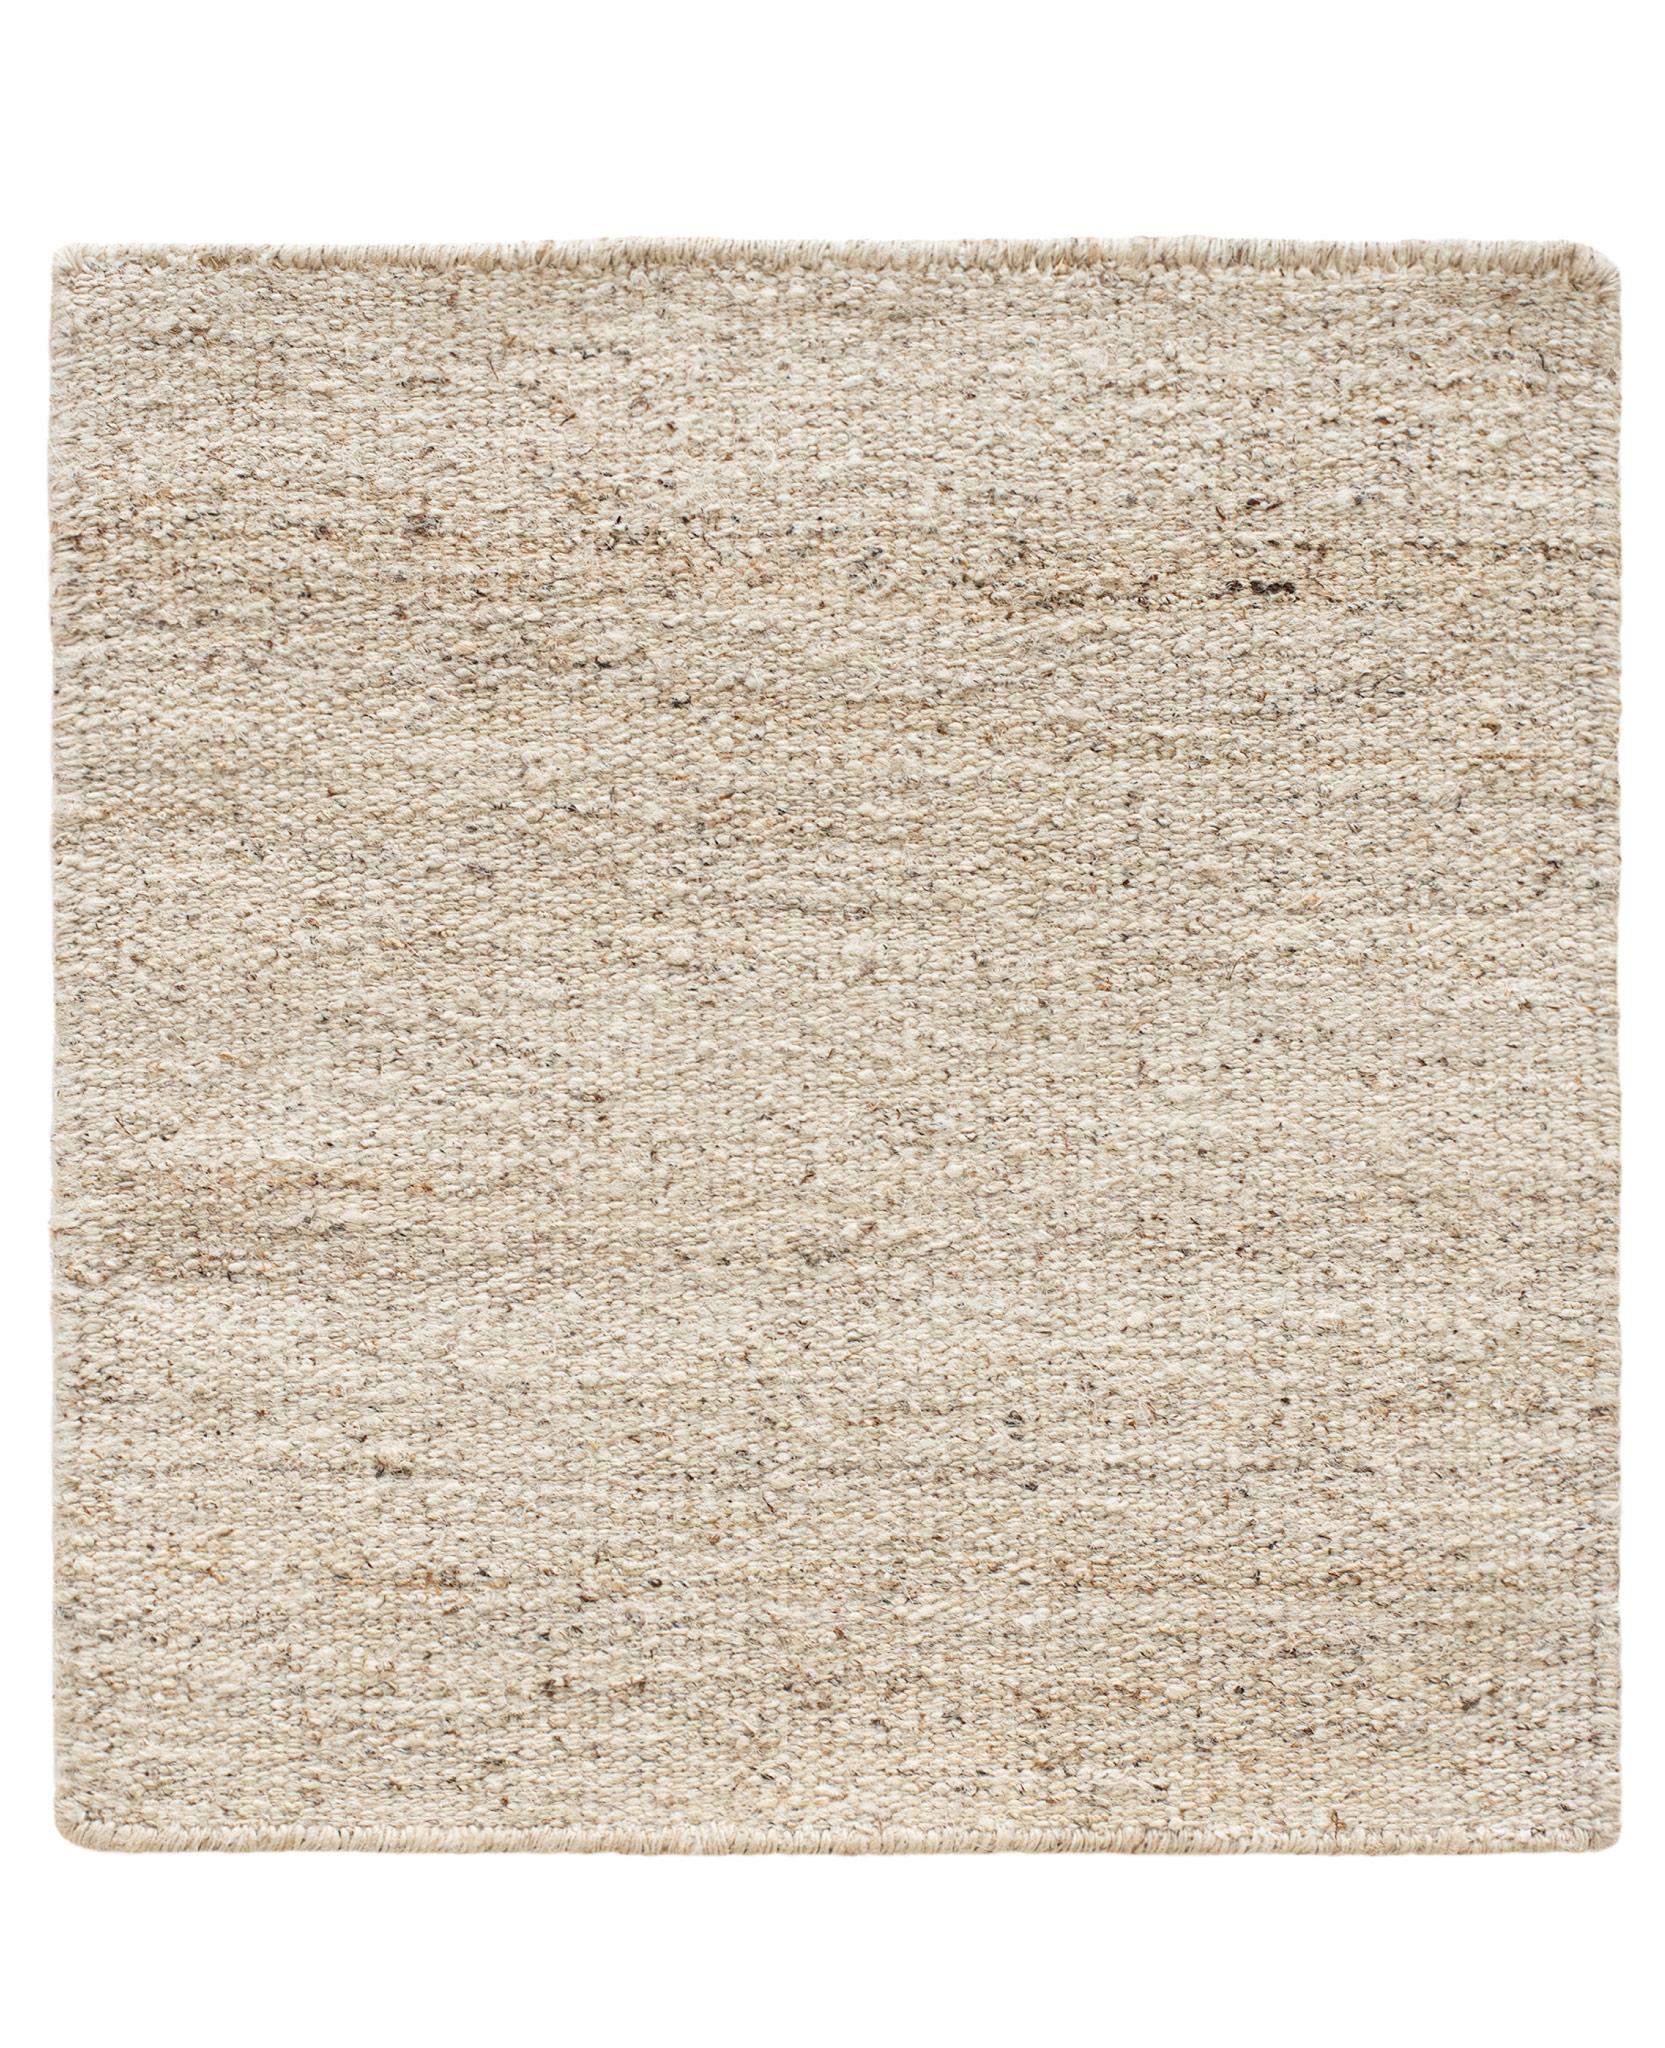 COULEUR : Nature
MATERIAL : 100% Ortie
QUALITÉ : Tissage plat
ORIGINE : tapis tissé à la main au Népal
 
TAILLE DU TAPIS AFFICHÉ : 200cm x 300cm

Faisant partie de la collection Knots Rugs Textures, Dhurrie est un tapis à tissage plat produit au